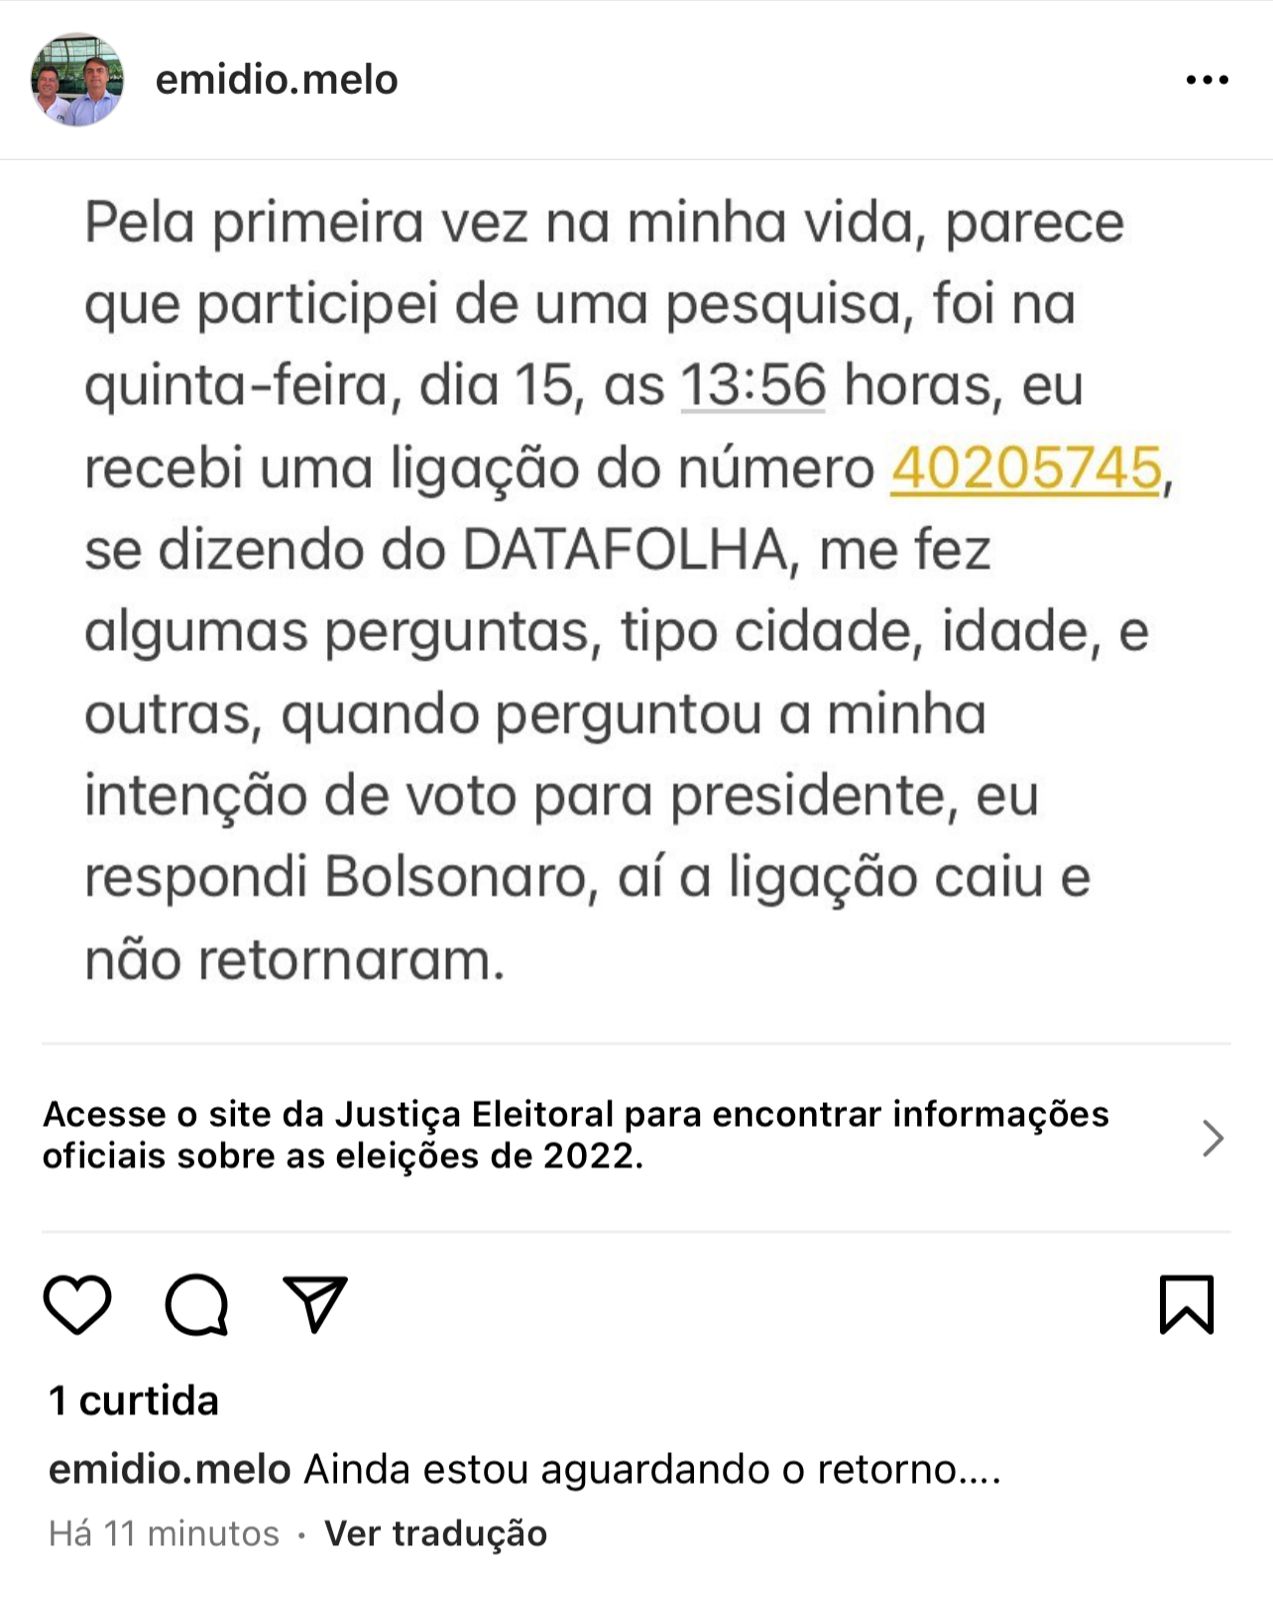 Empresário afirma que ligação do DataFolha caiu quando ele disse que votava em Bolsonaro